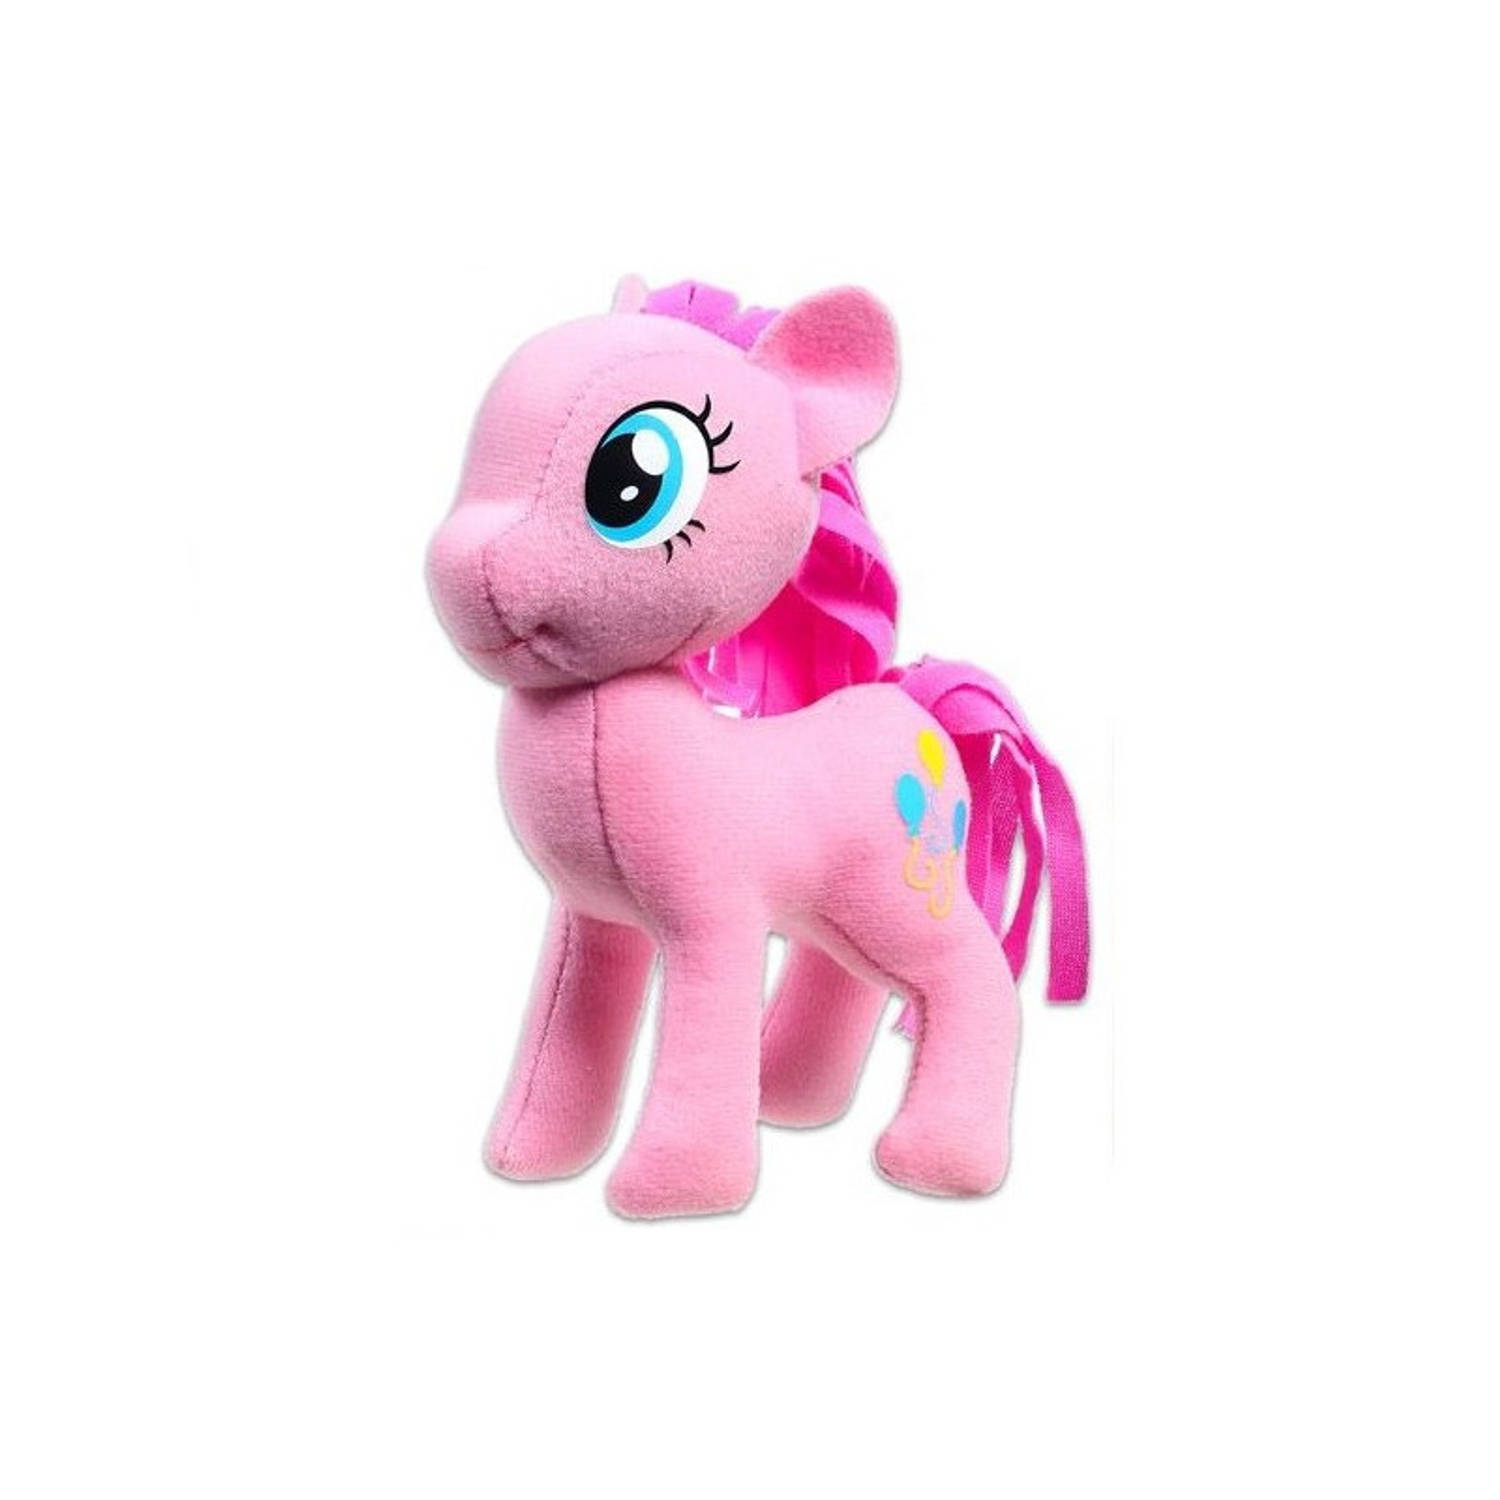 Pluche My Little Pony Pinkie Pie Speelgoed Knuffel Roze 13 Cm Hasbro Speelgoed Knuffels